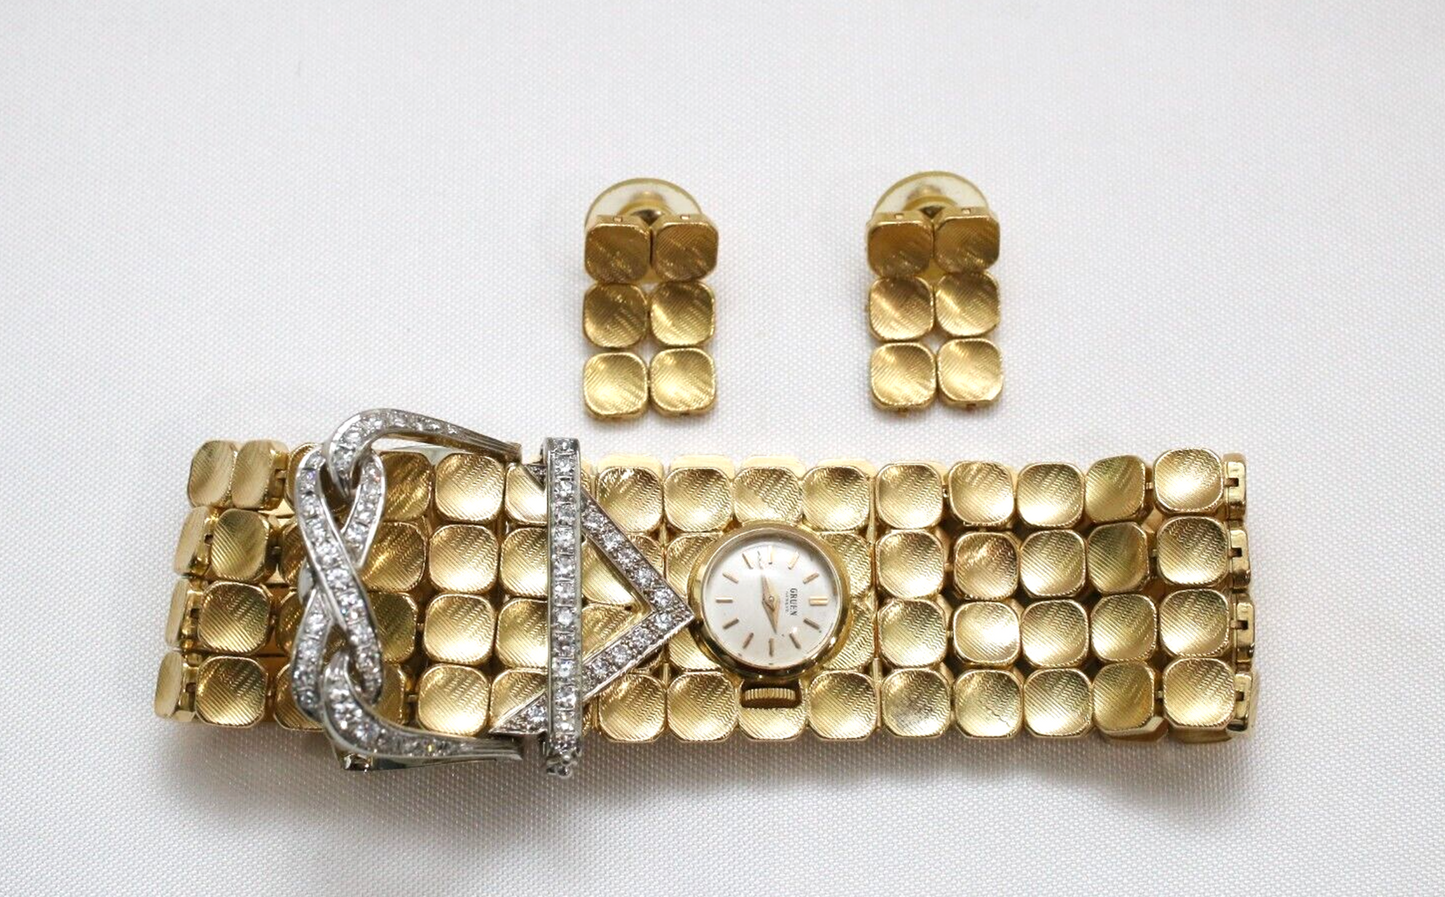 18k Yellow Gold & Diamond Bracelet with Hidden Gruen Watch & Matching Earrings Set